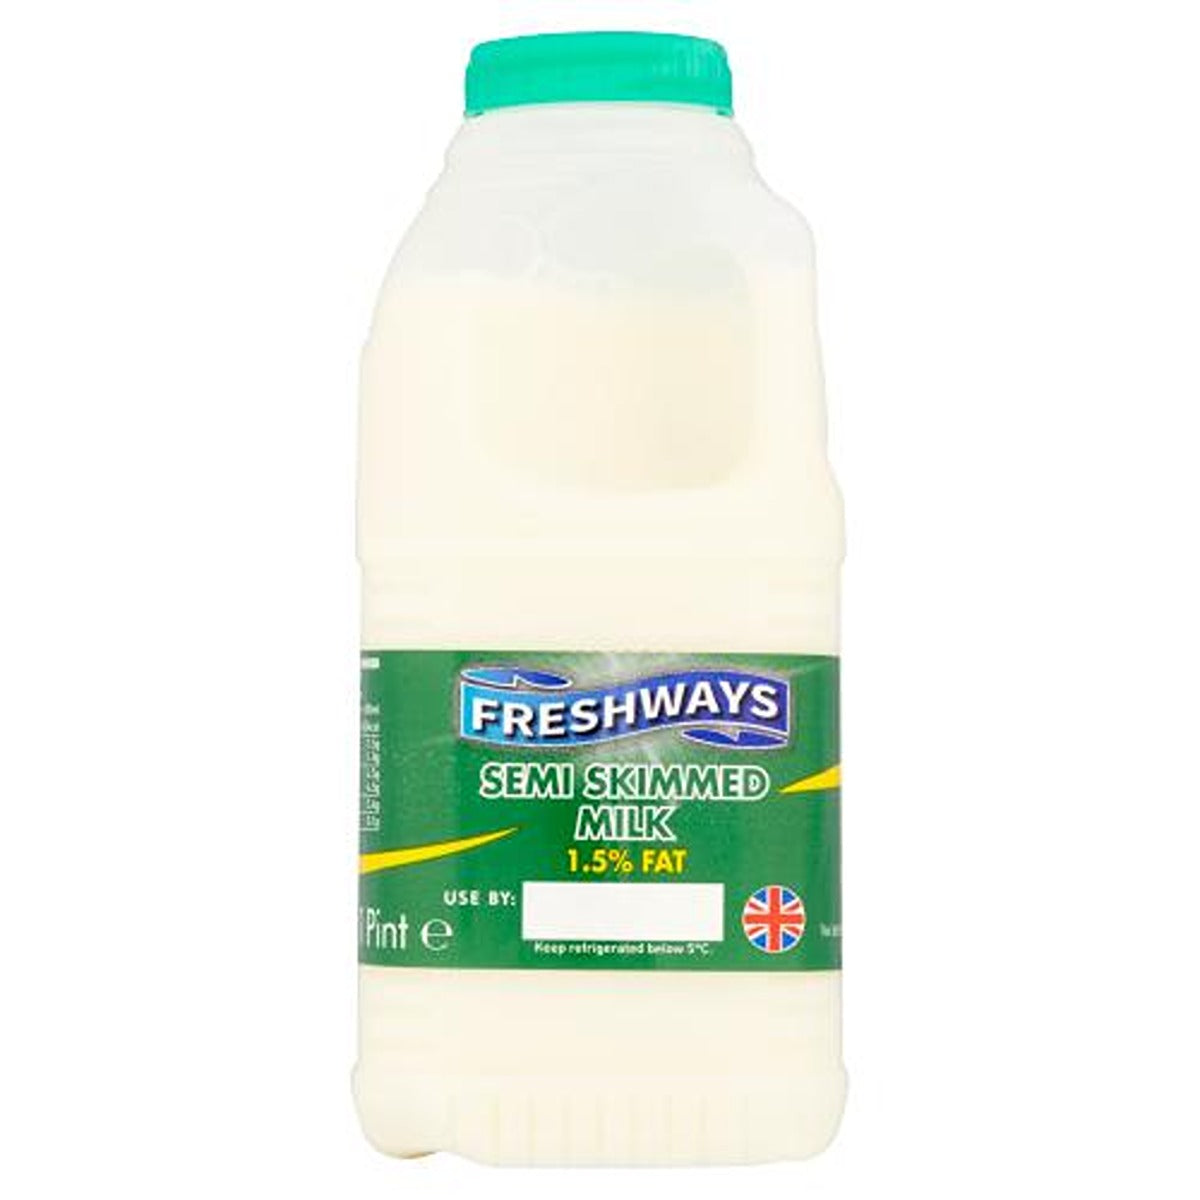 Freshways - Semi Skimmed Milk - 568ml - Continental Food Store